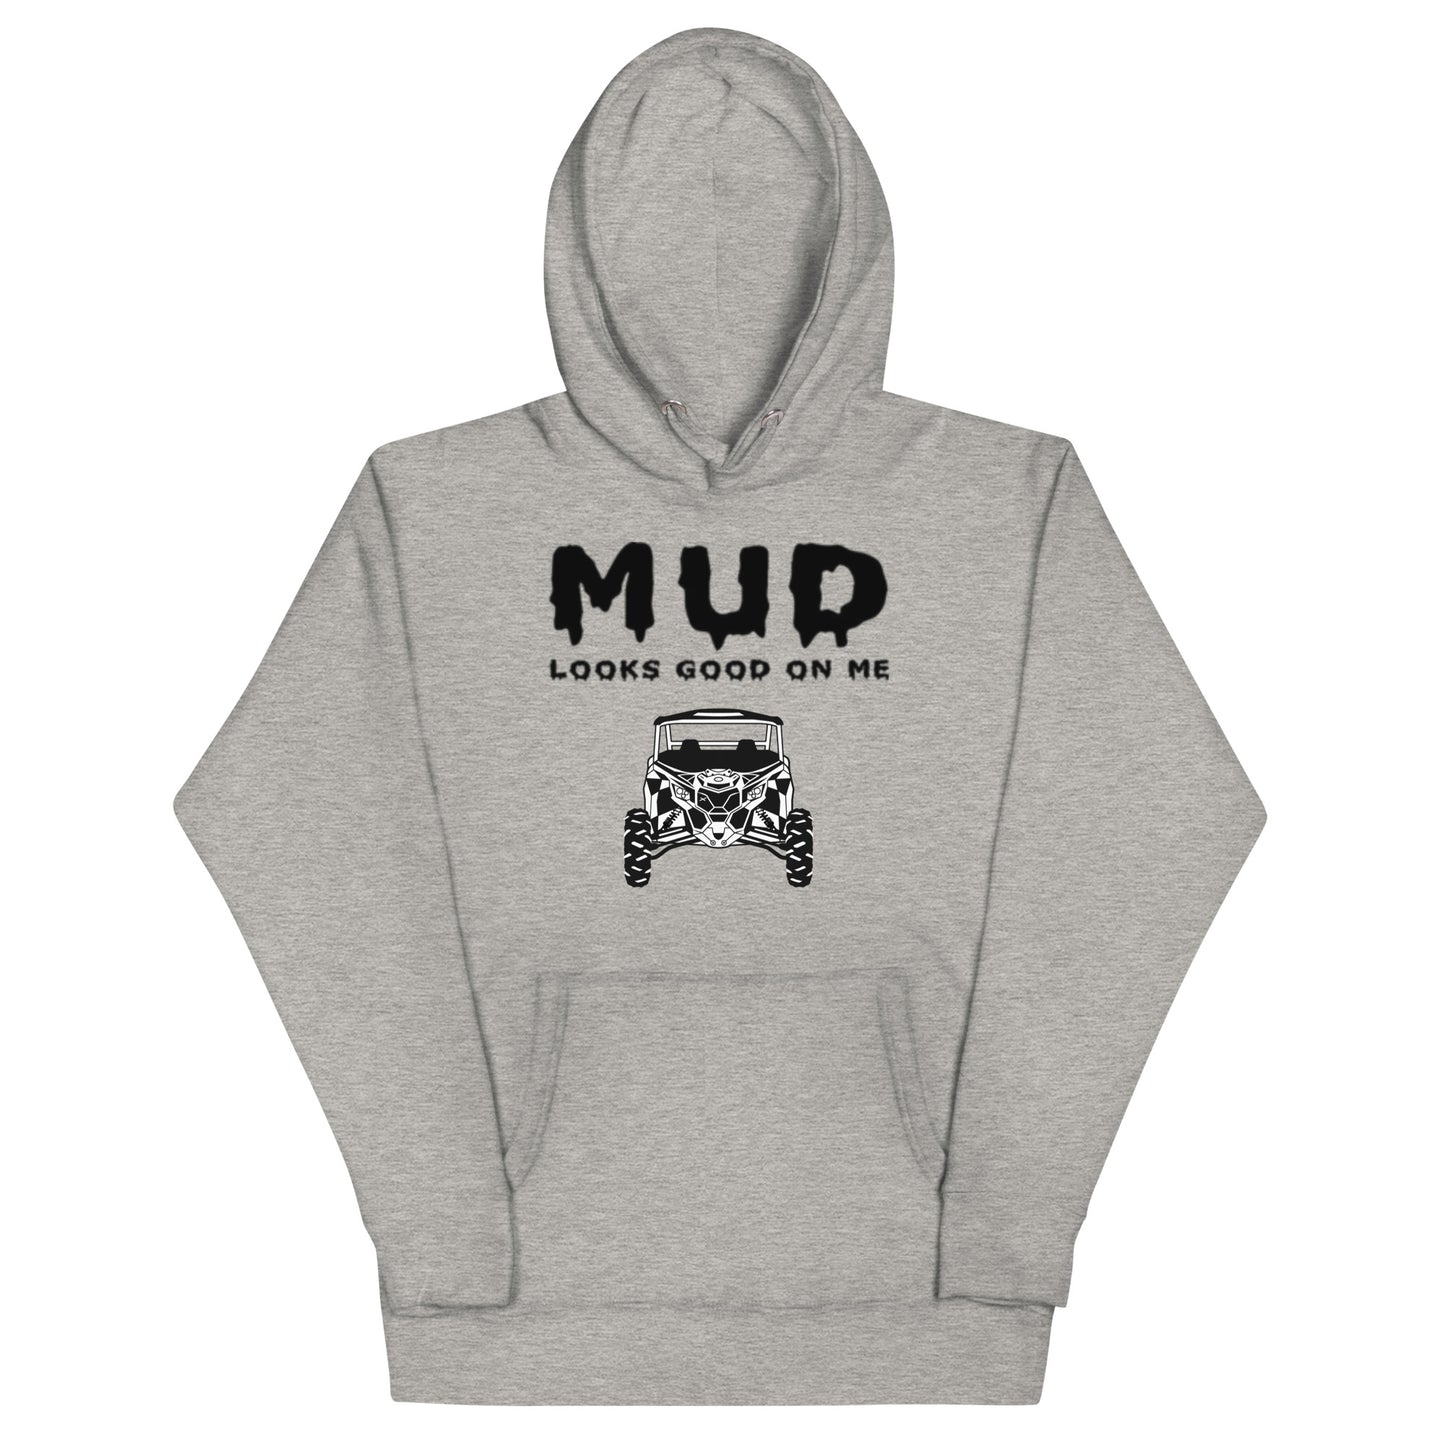 Mud Looks Good on Me - Unisex hoodie